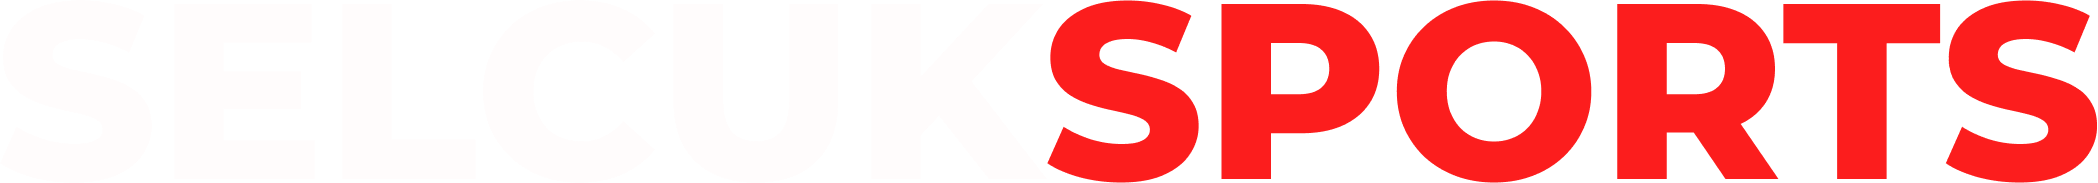 SELCUKSPORTSHD Logo